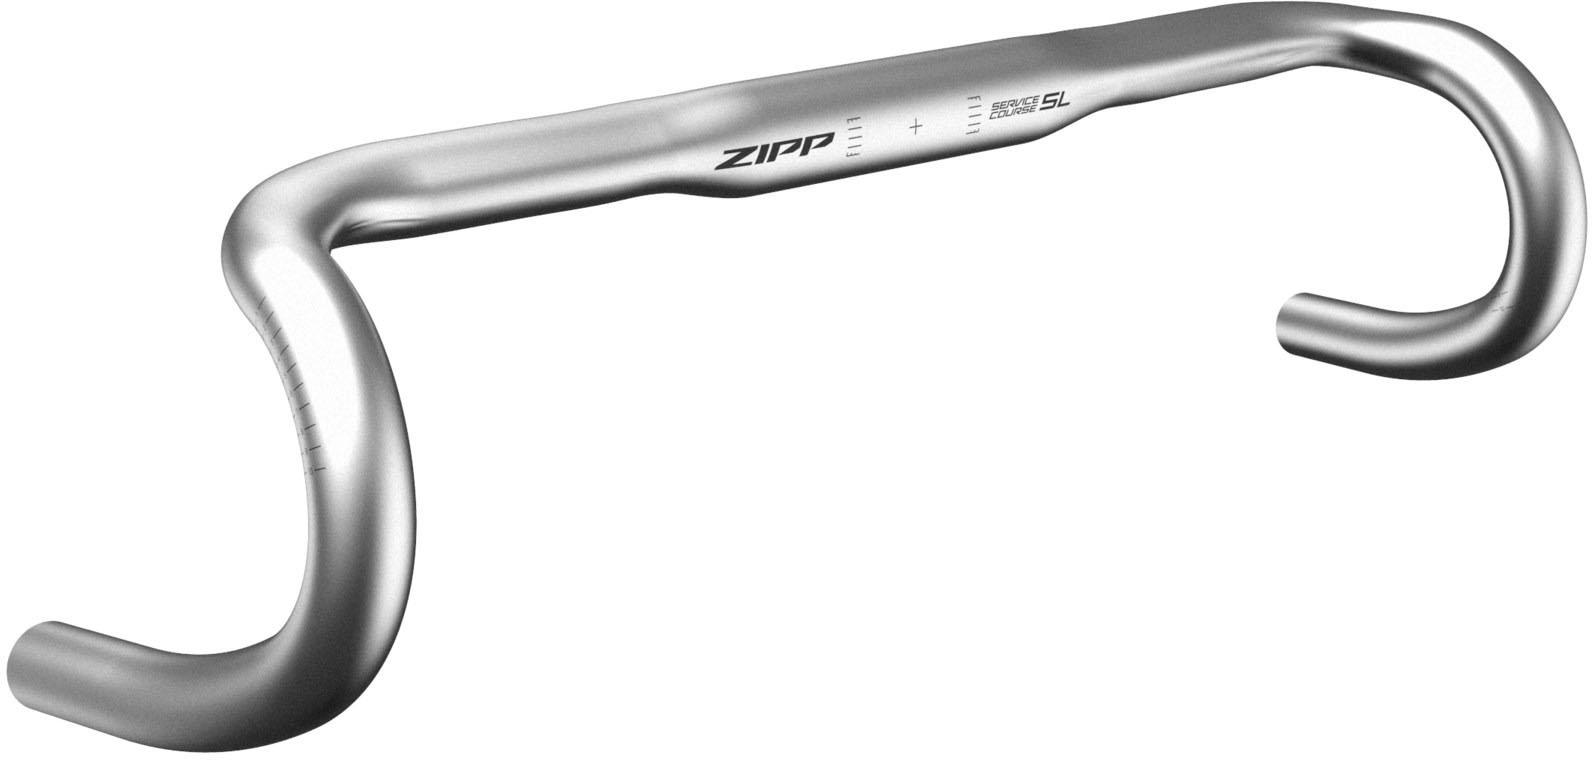 Zipp Service Course 70 Xplr Handlebar - Silver